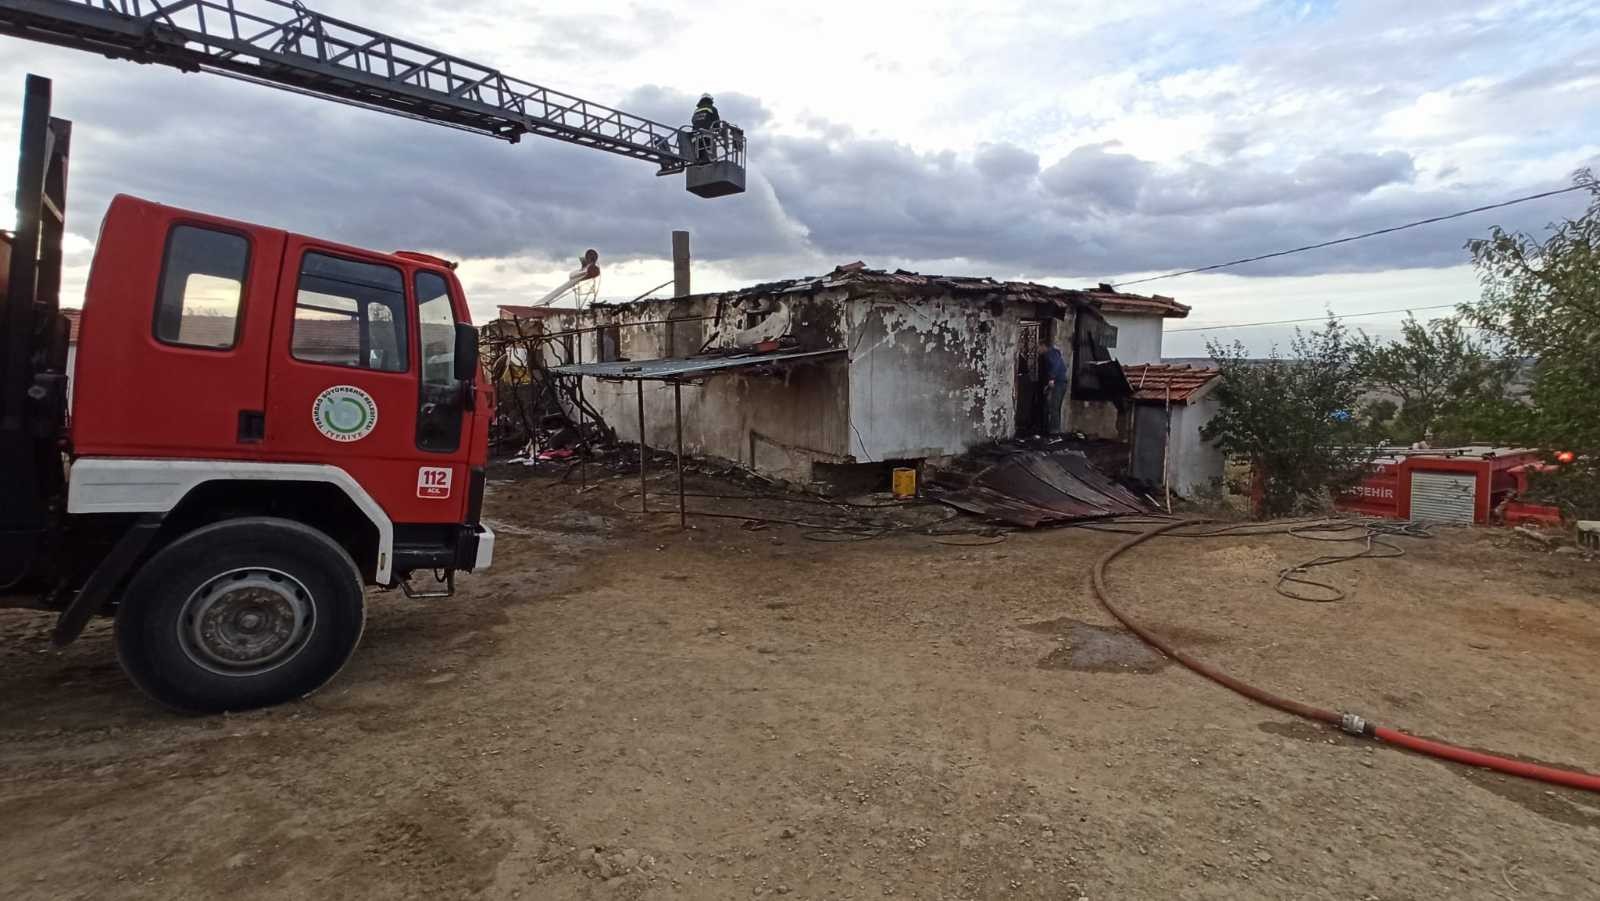 Malkara’da 2 ev yandı: 1 kişi hastanelik oldu #tekirdag